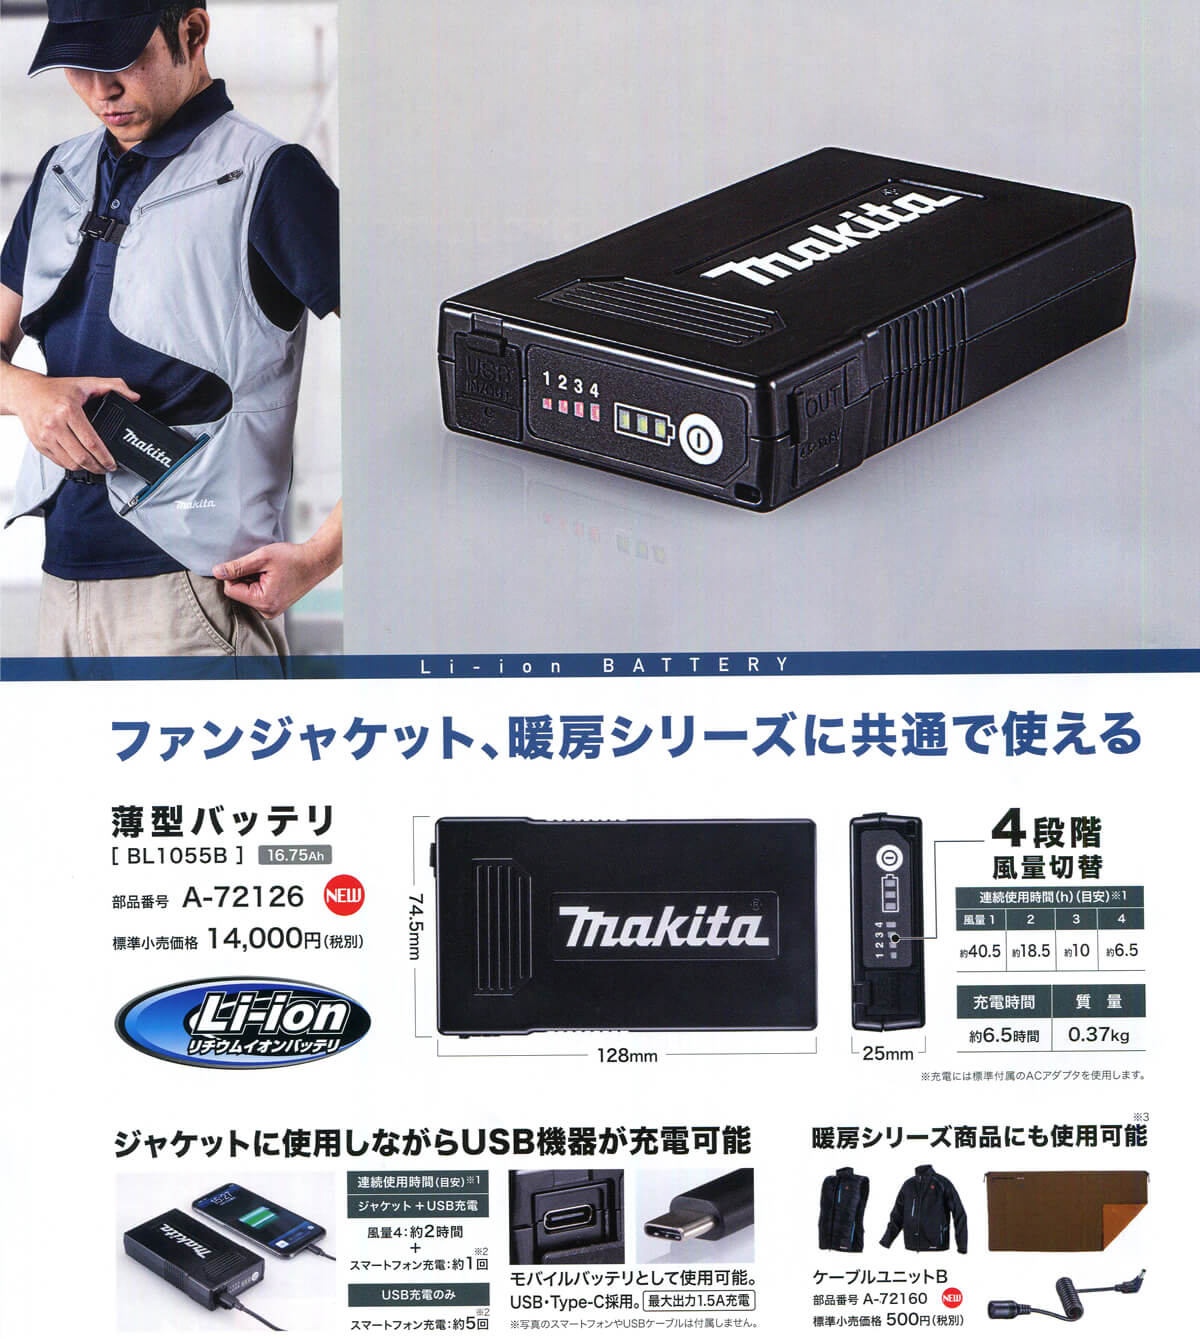 マキタ makita 空調服バッテリー+ファンセット